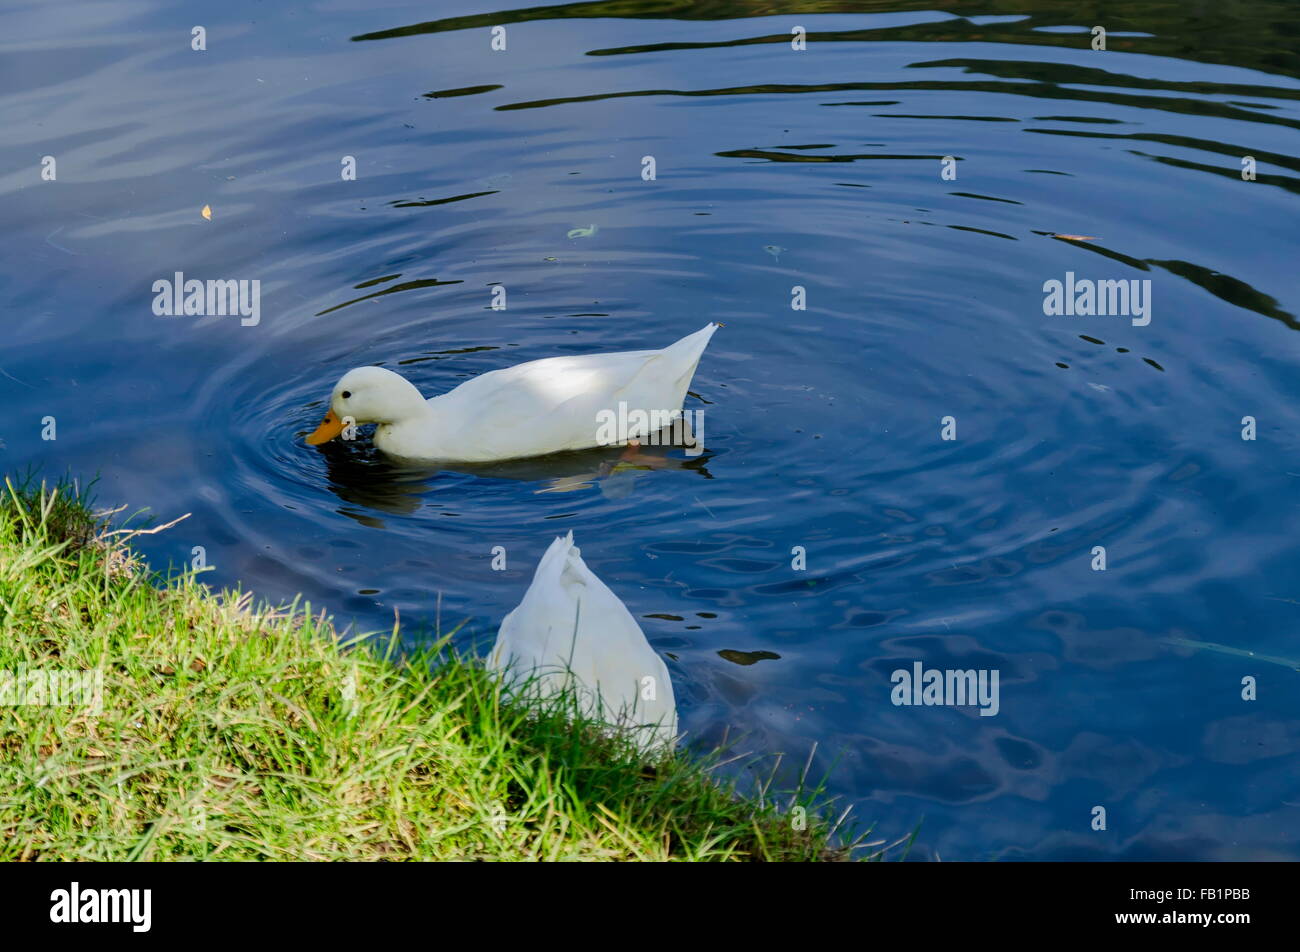 Femmina Mallard duck dalla riva del lago, Pancharevo, Bulgaria Foto Stock